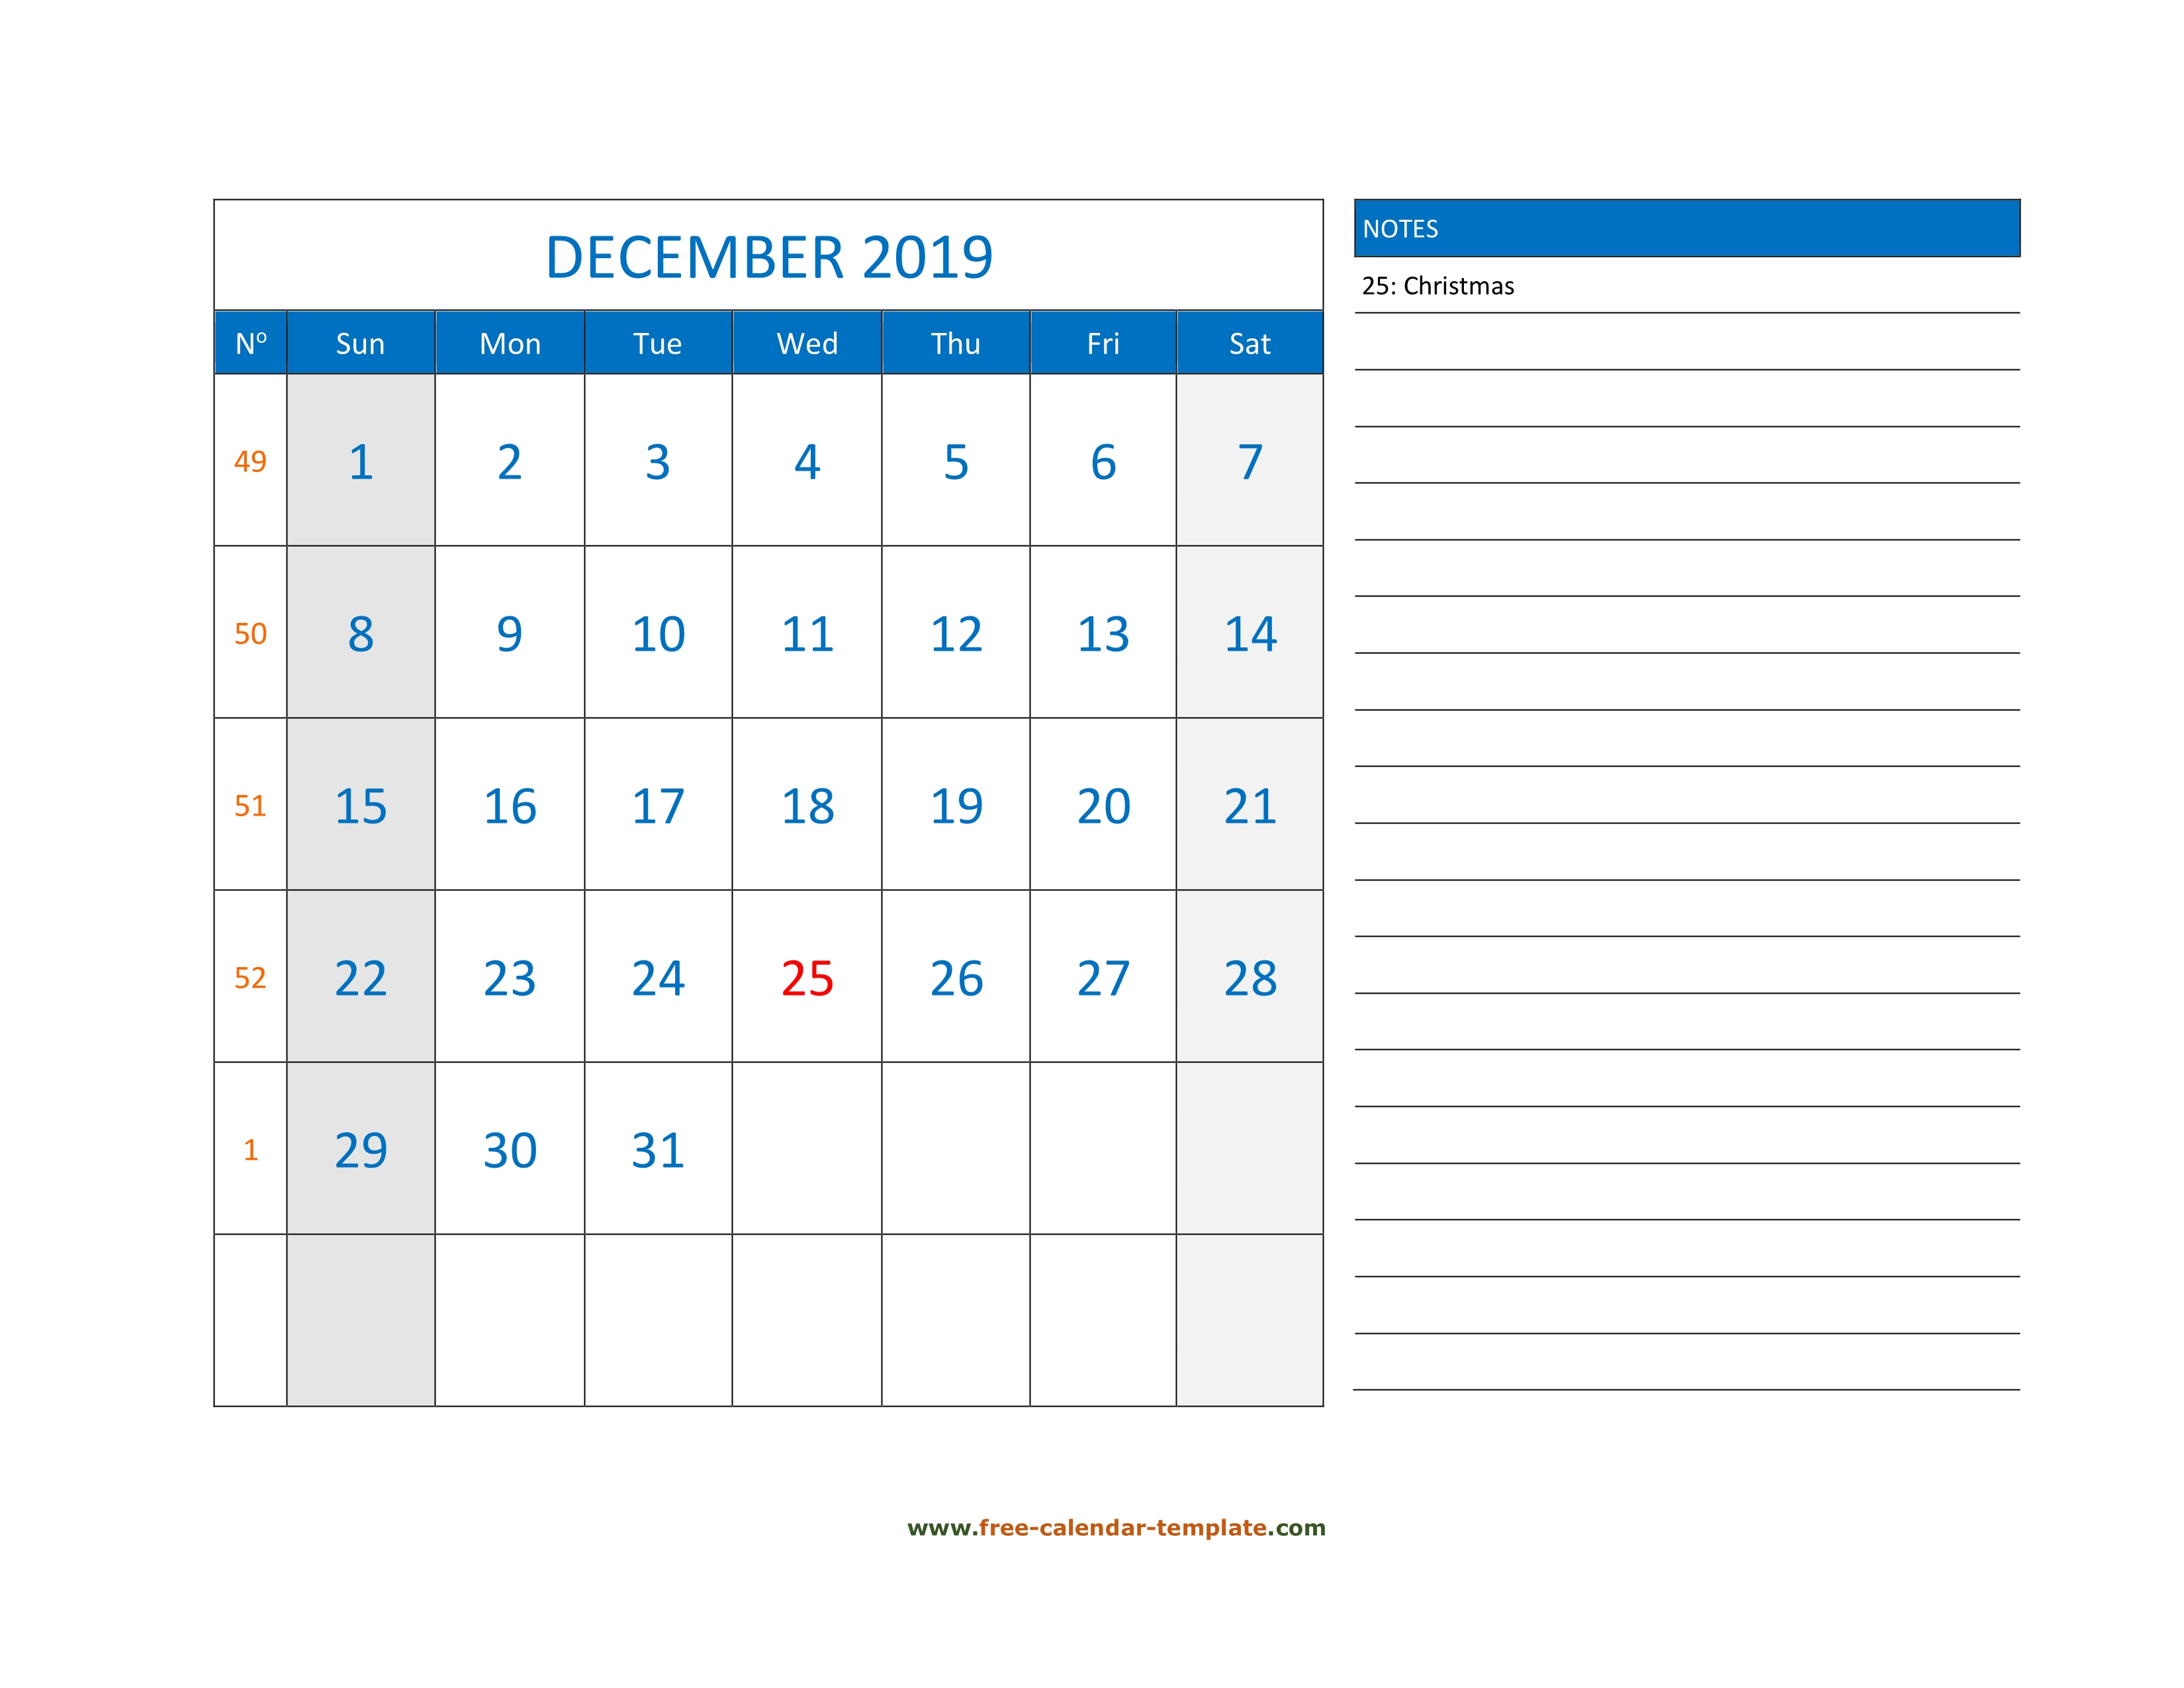 December 2019 Free Calendar Tempplate | Free-Calendar